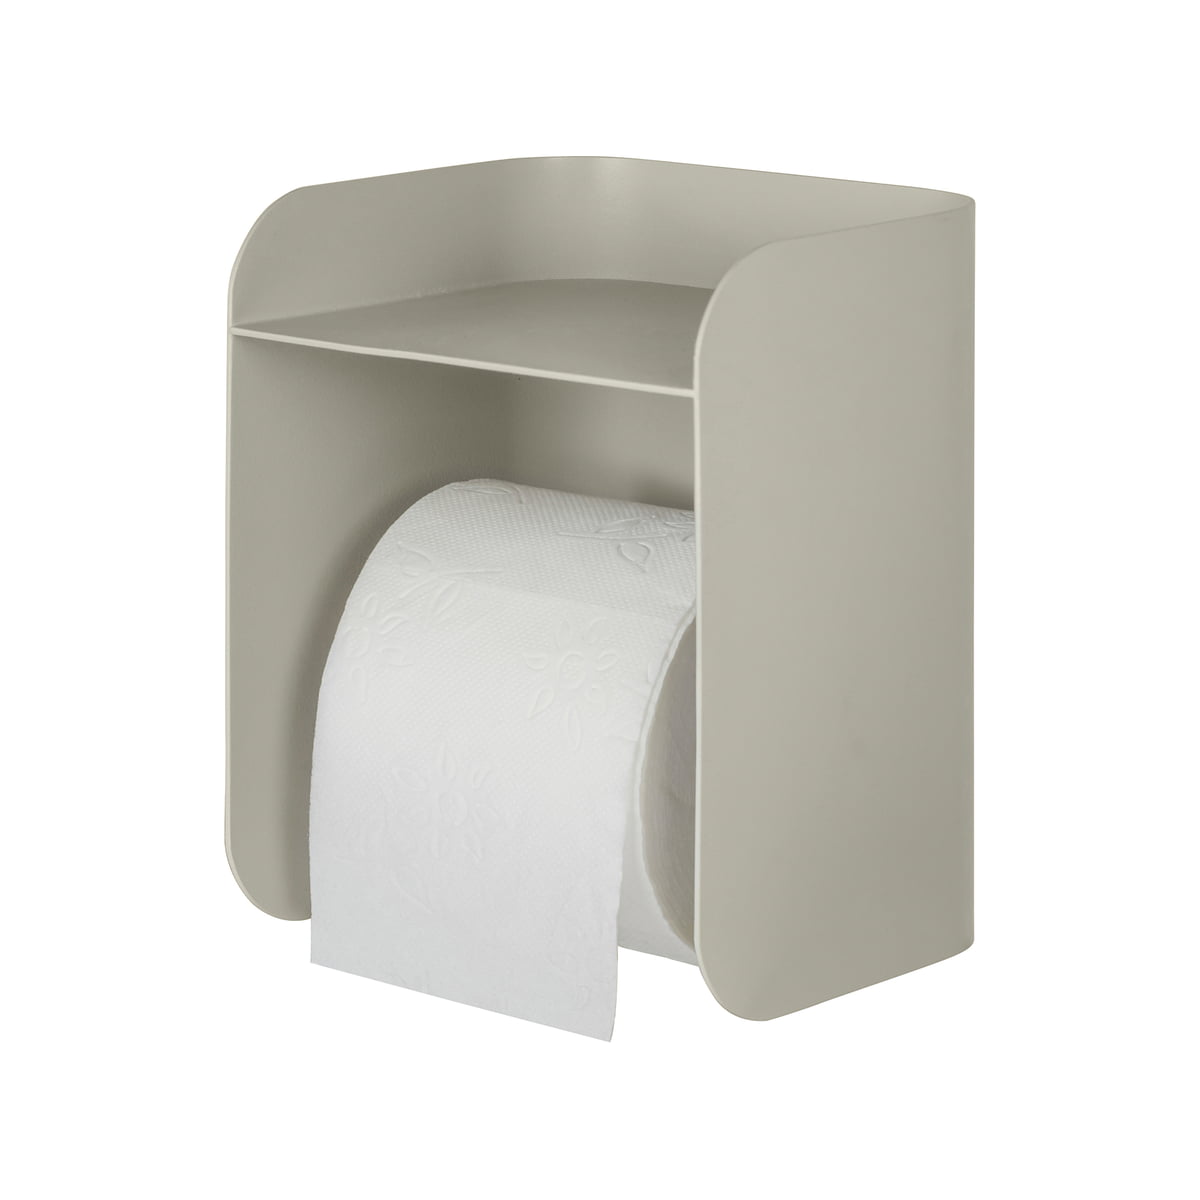 https://cdn.connox.com/m/100030/583993/media/Mette-Ditmer/AW-2022/Mette-Ditmer-Carry-Toilettenpapierhalter-mit-Ablage-sand-grey-mit-Toilettenpapier.jpg